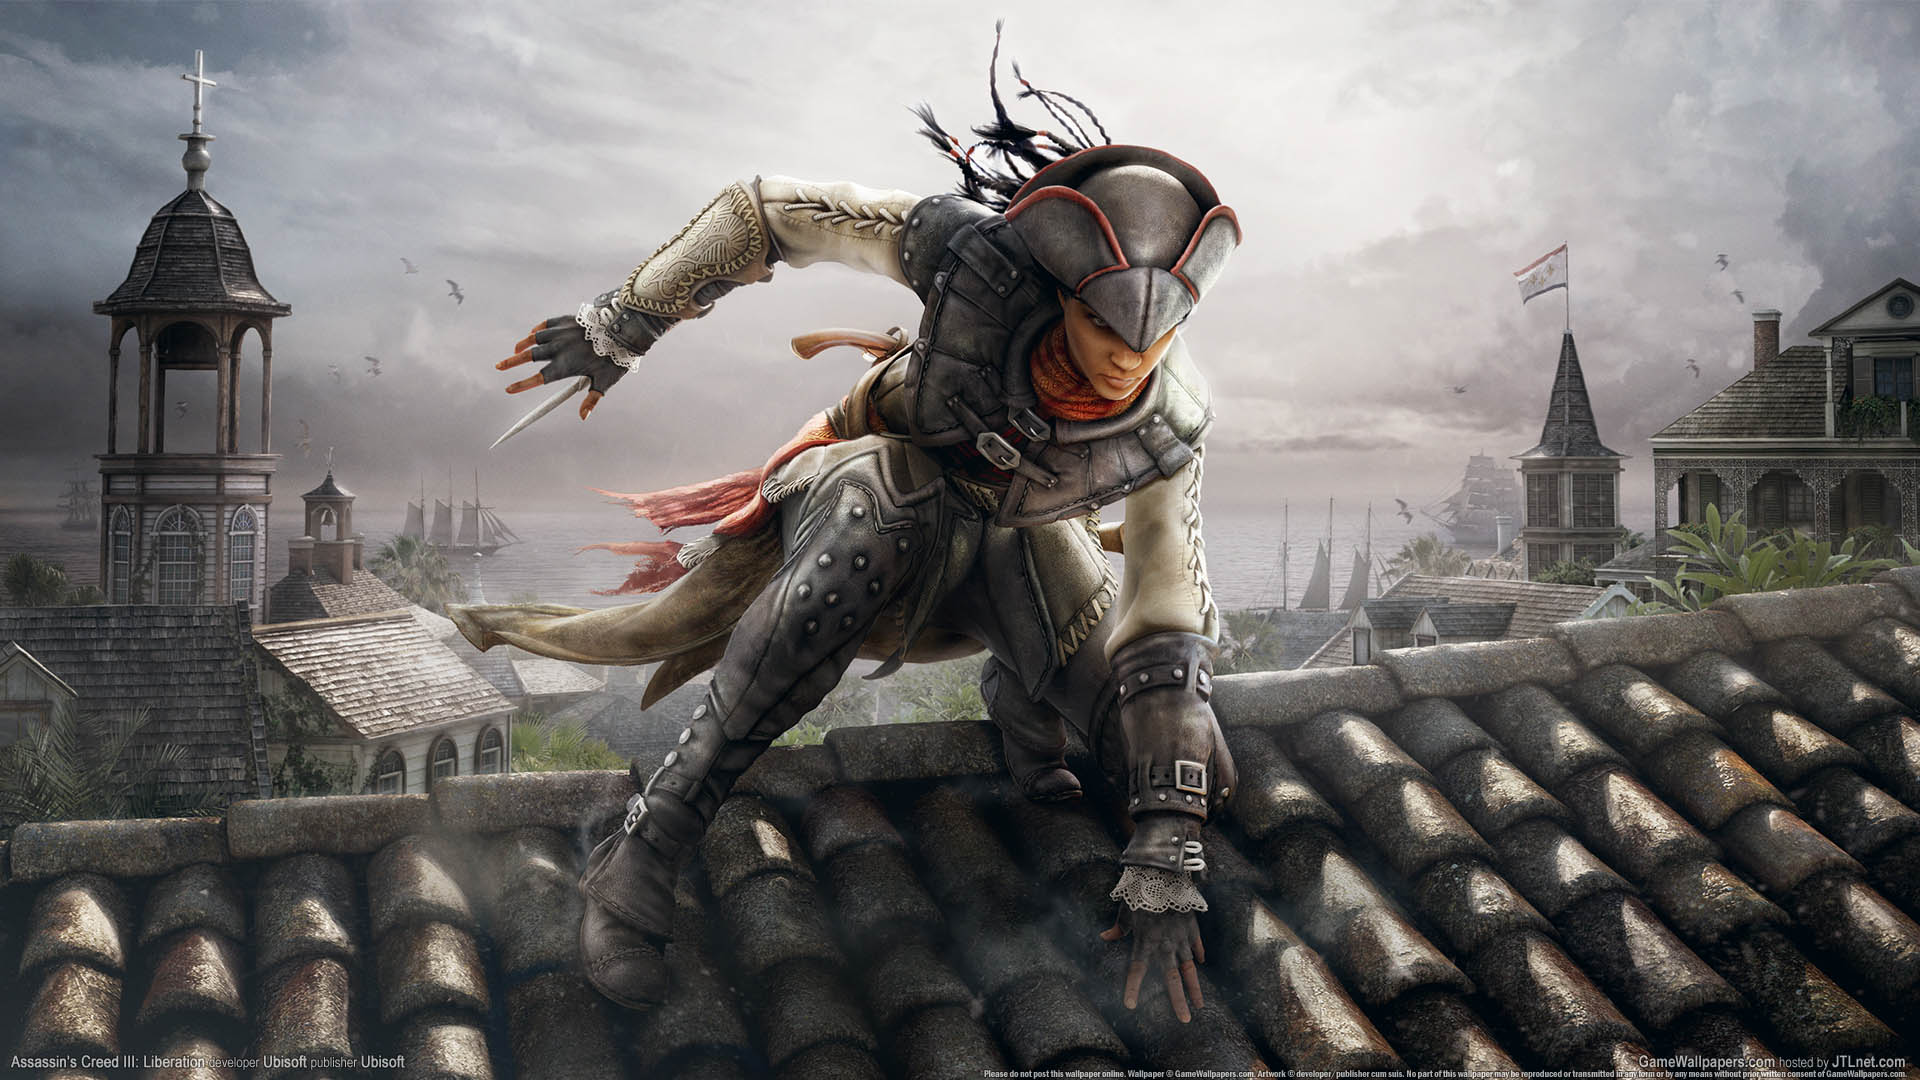 Assassin's Creed III: Liberation fond d'cran 01 1920x1080